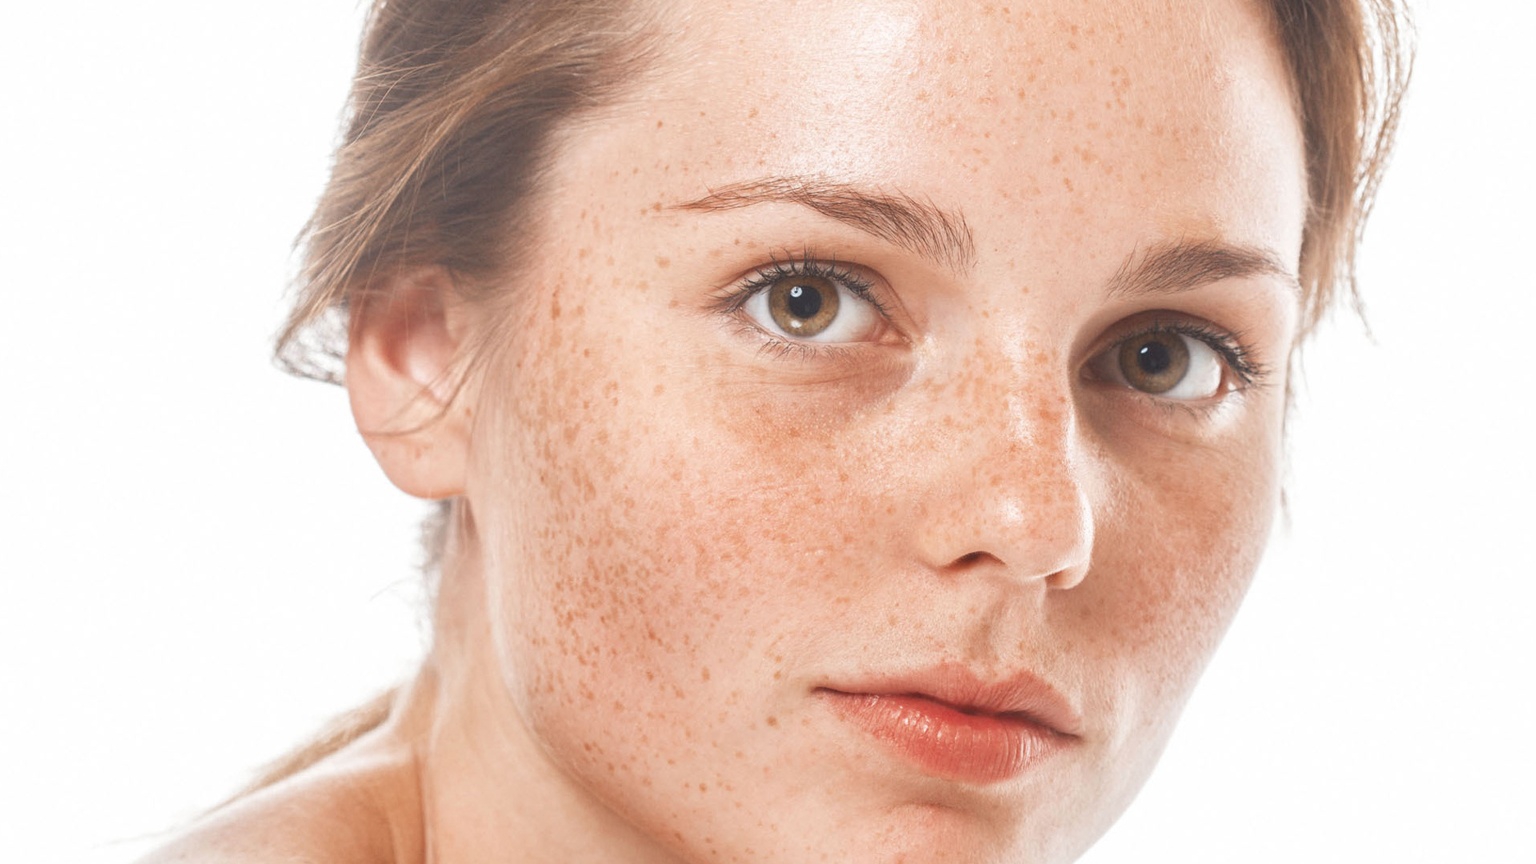 Có tự nhiên liệu rối loạn sắc tố da có thể tự điều trị được không?
